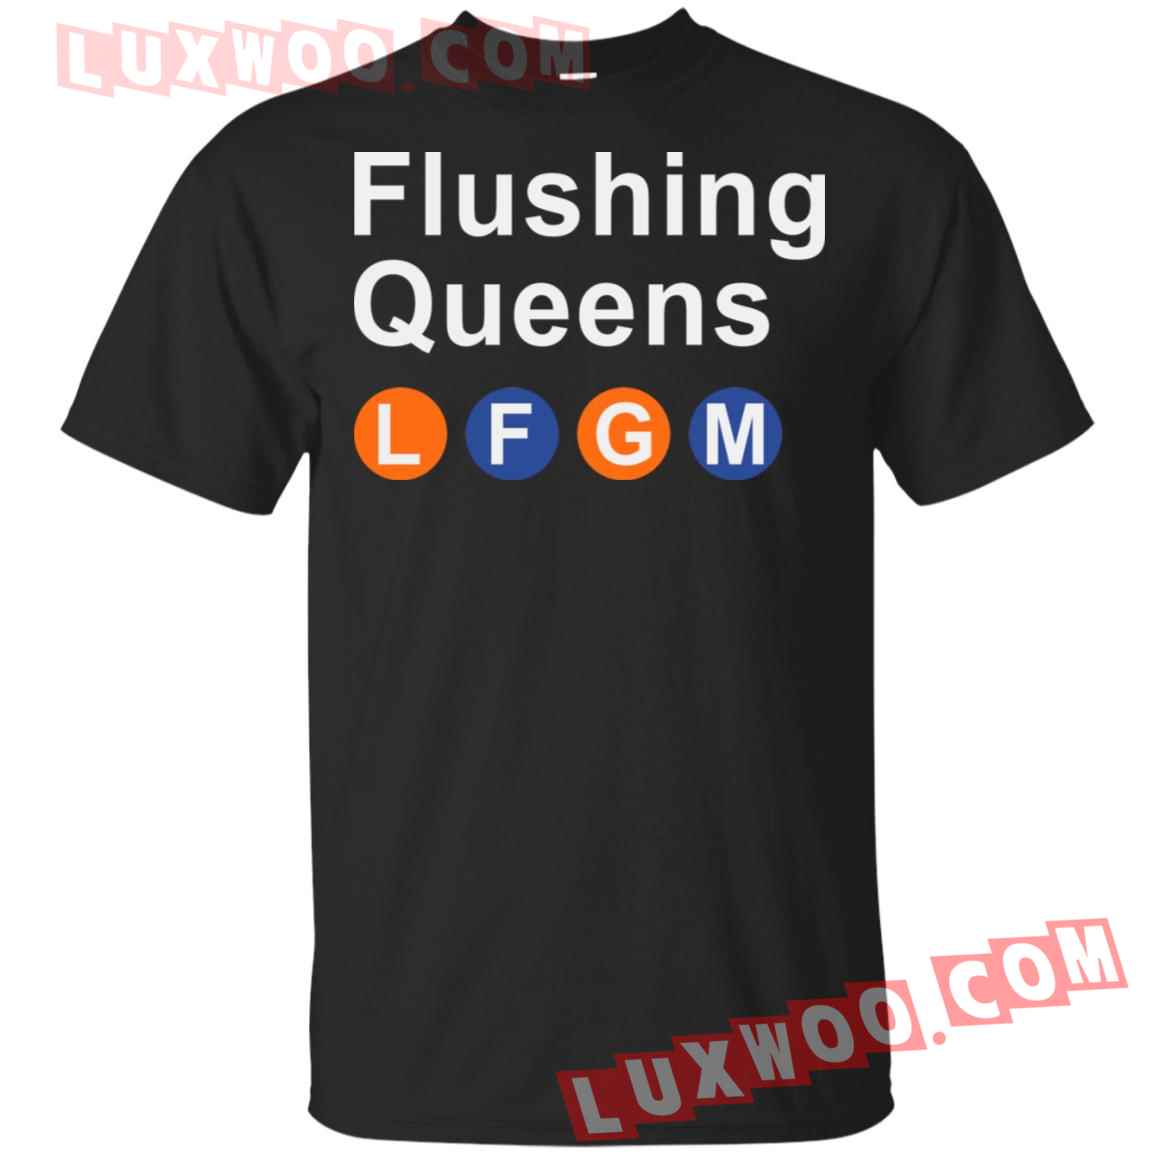 Flushing Queens Lfgm Shirt